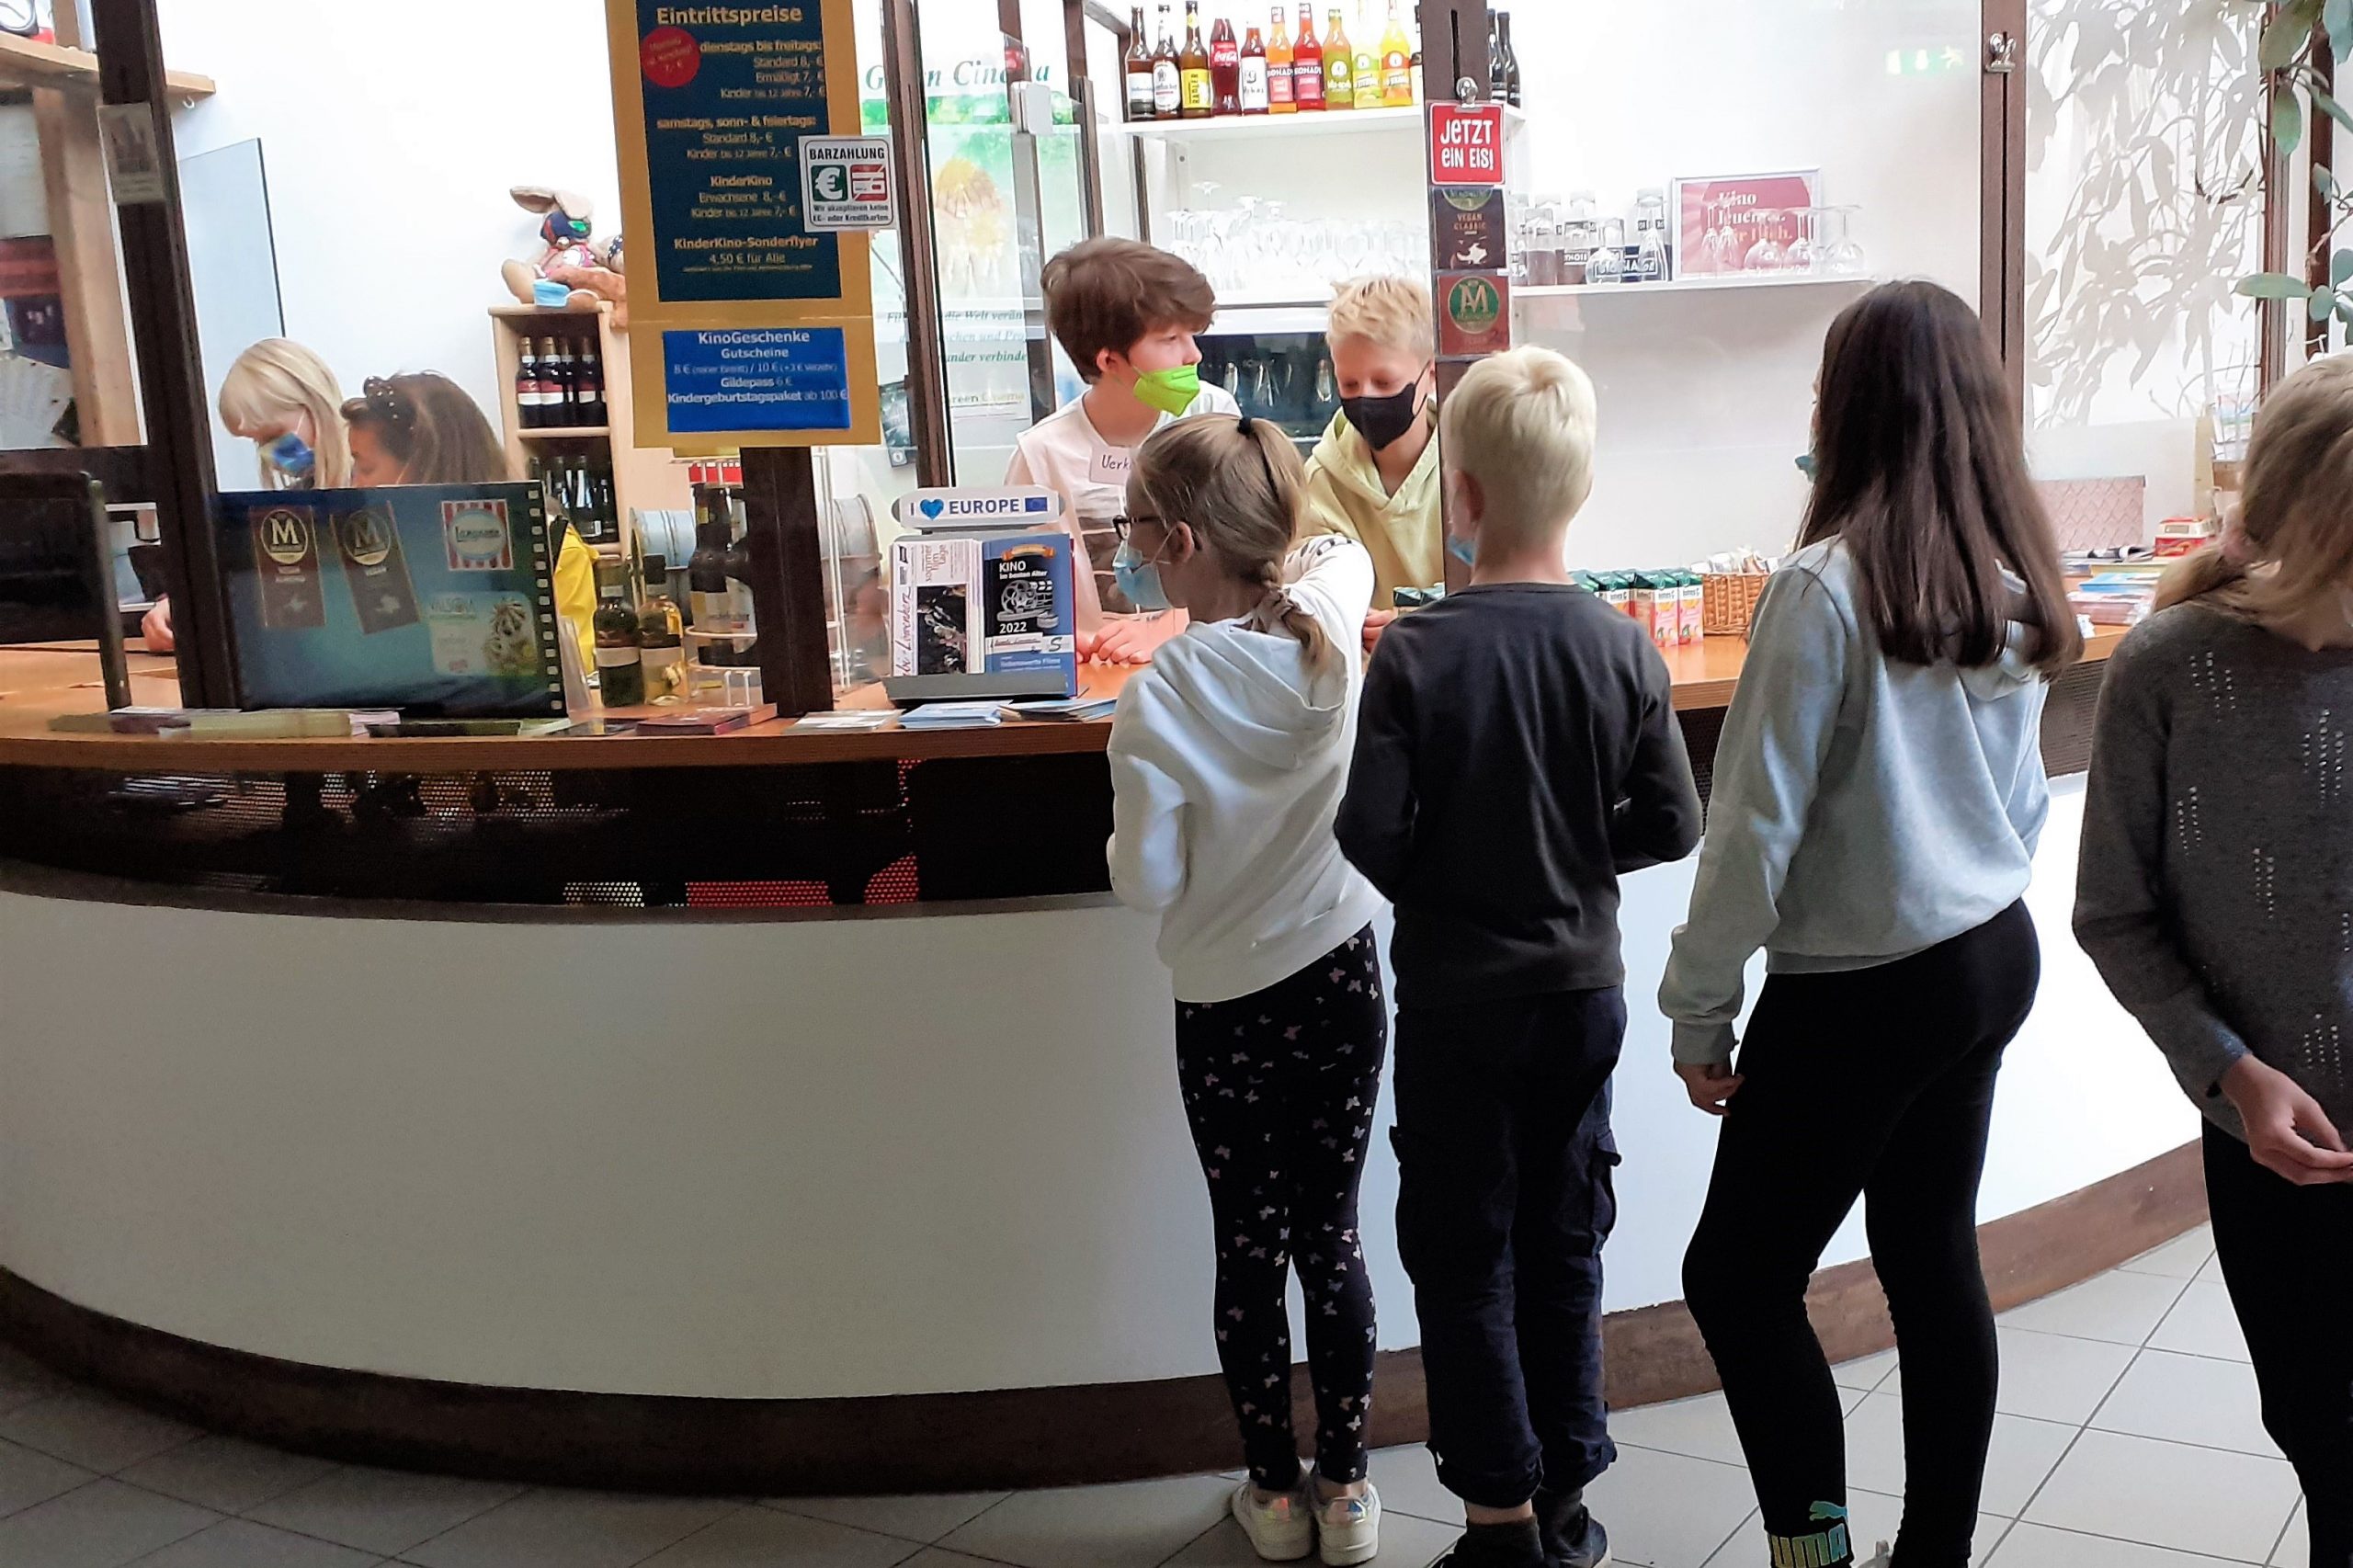 Mehrere Kinder stehen in einer Schlange vor einer Theke, an der Getränke und Snacks verkauft werden. Zwei Kinder stehen hinter der Theke.